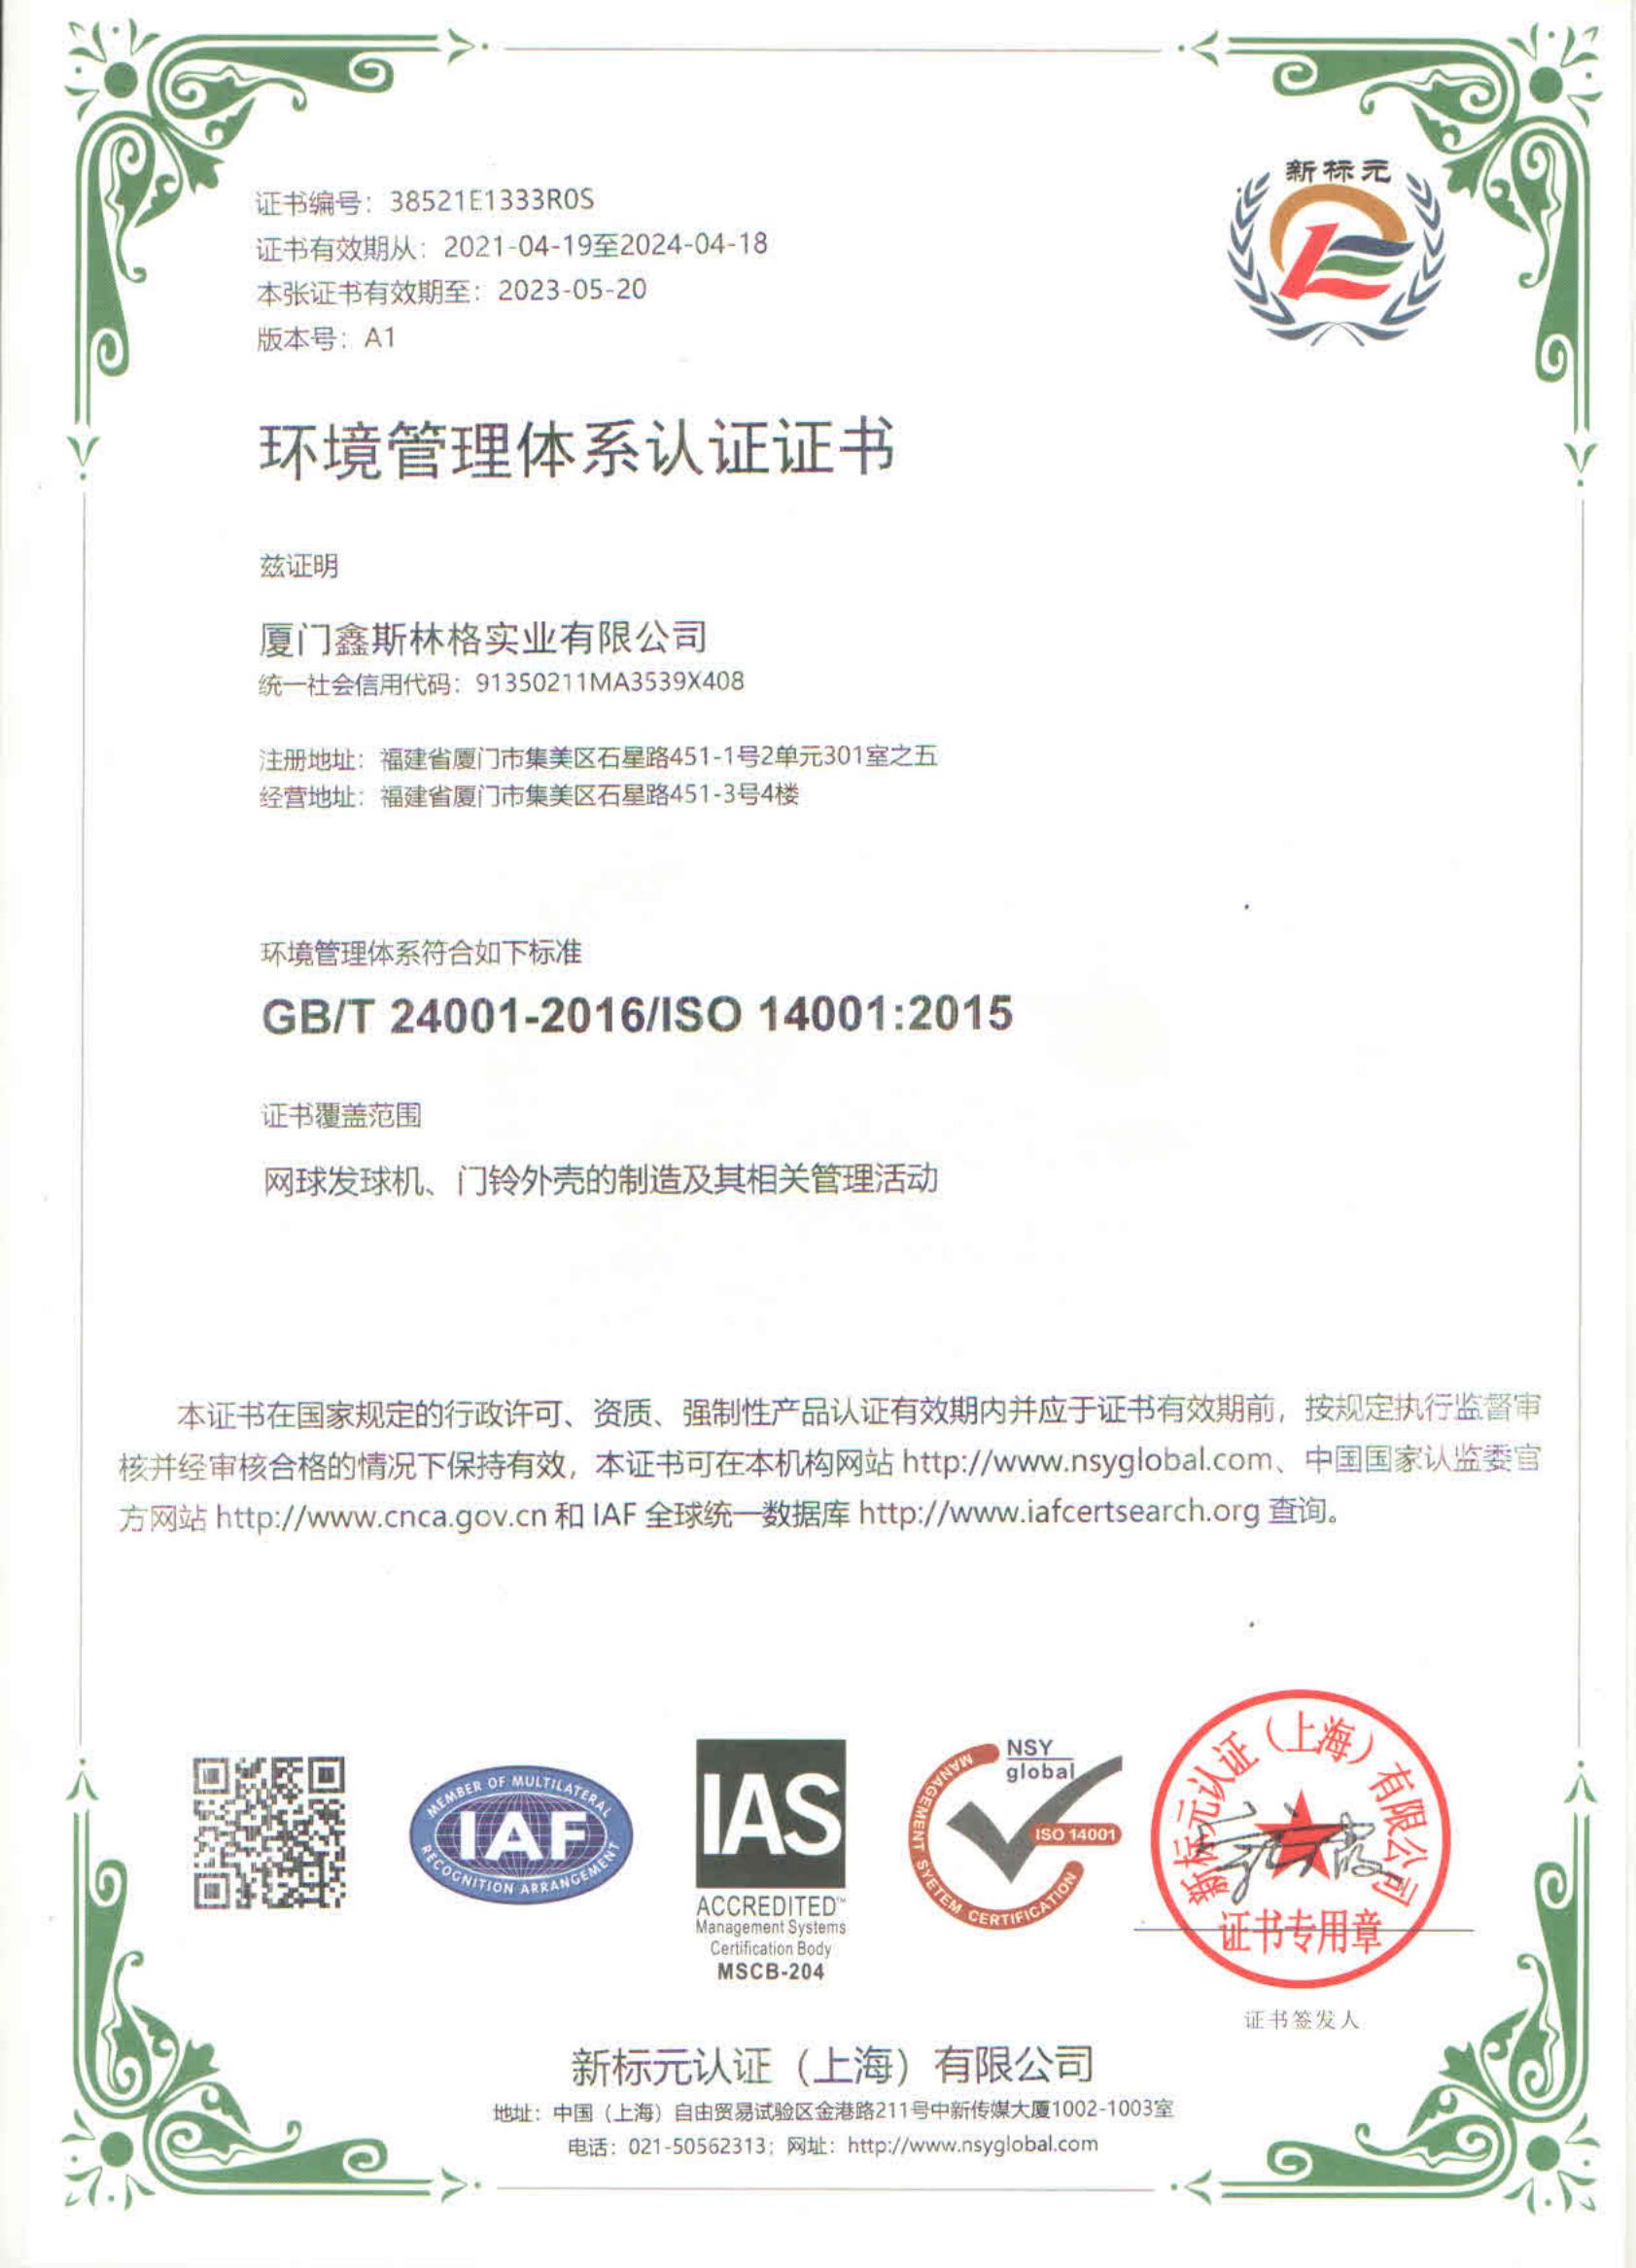 鑫 斯林格 - 环境 管理 体系 证书 证书 ISO 14001 中 英文 _00 |